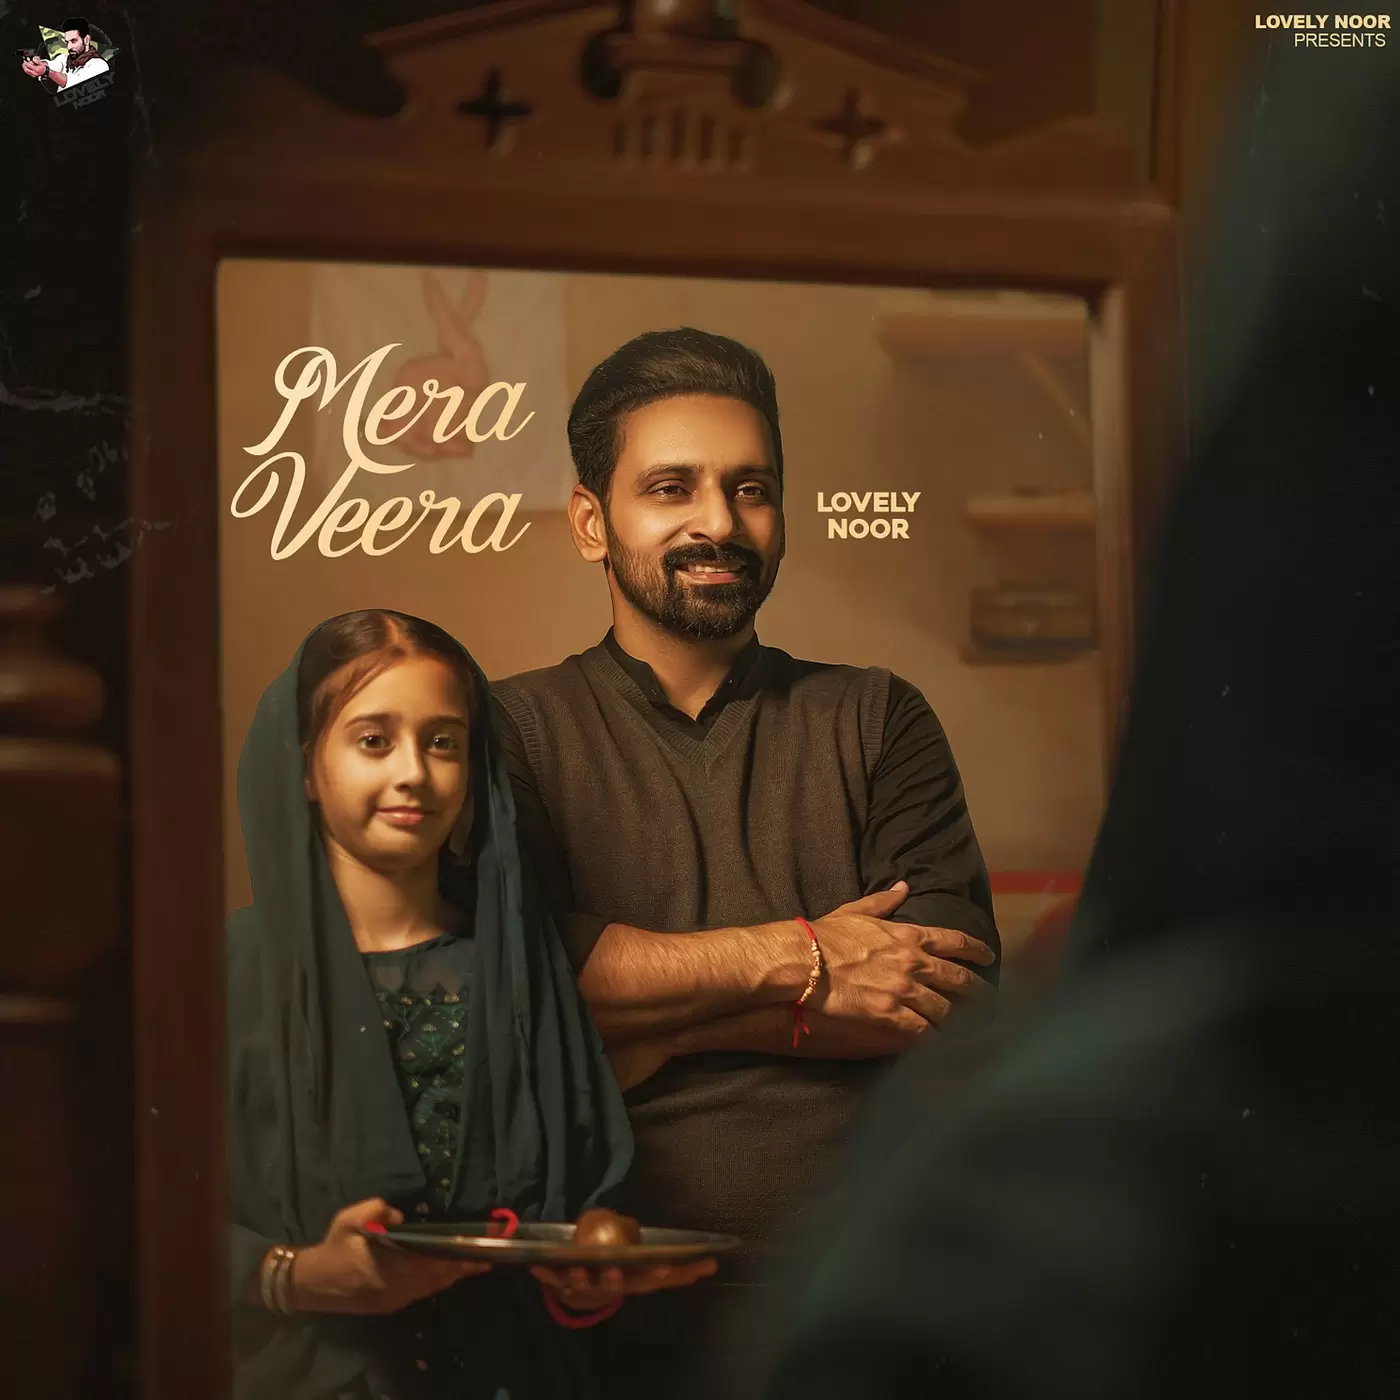 Mera Veera - Single Song by Lovely Noor - Mr-Punjab